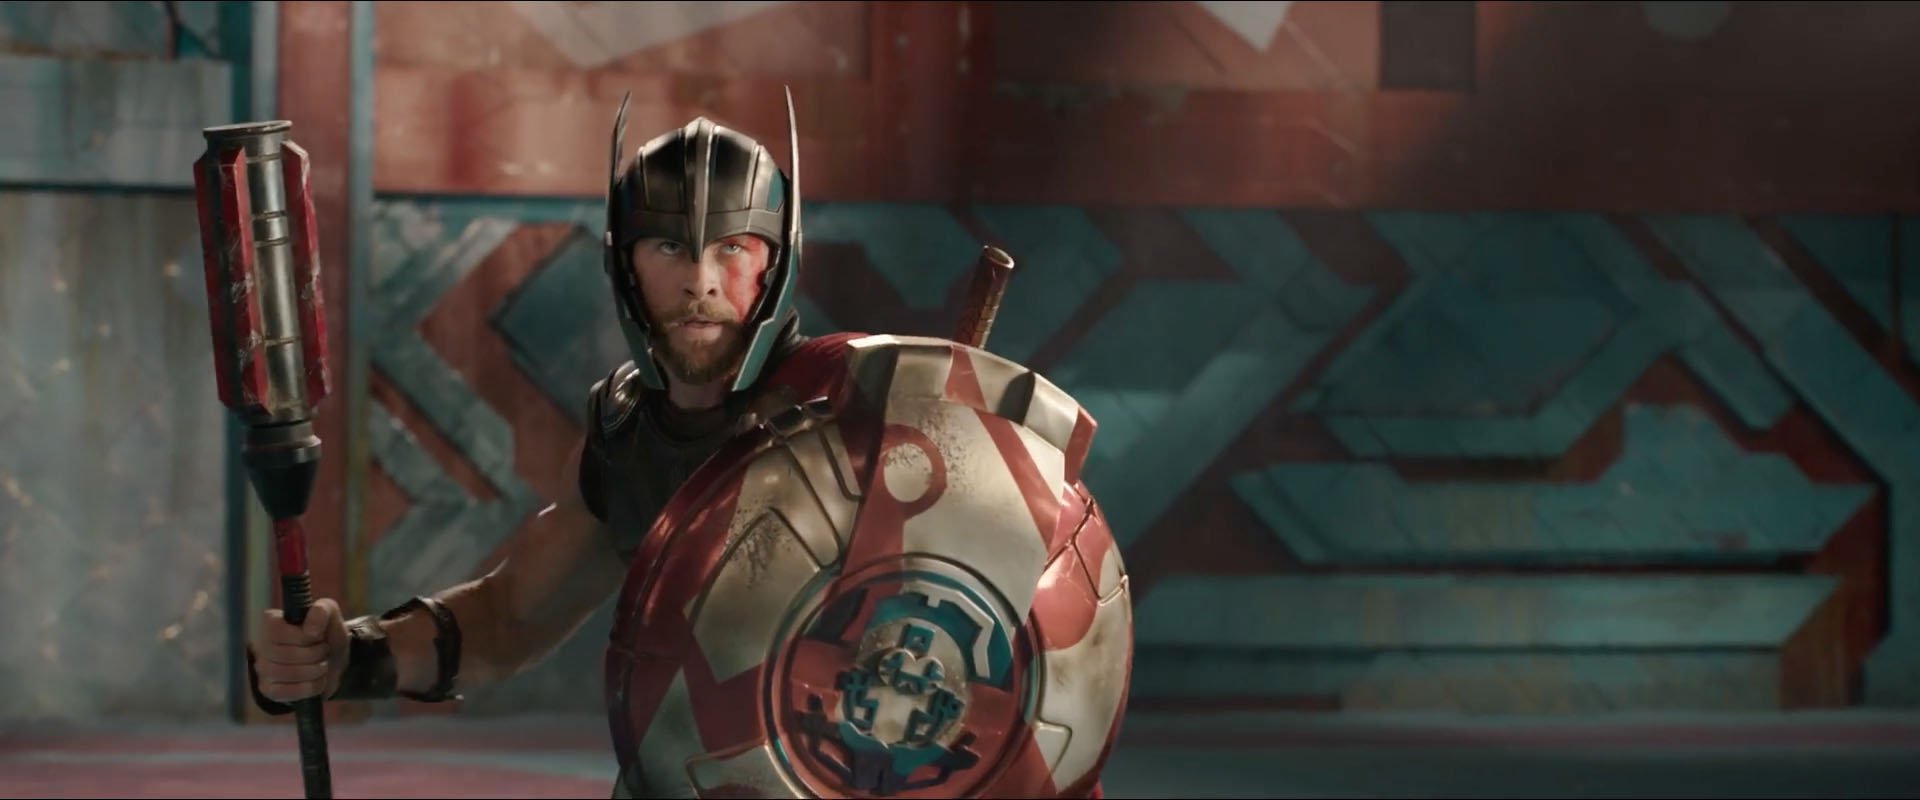 Thor: Ragnarok - cosa resta del mito originale? thumbnail